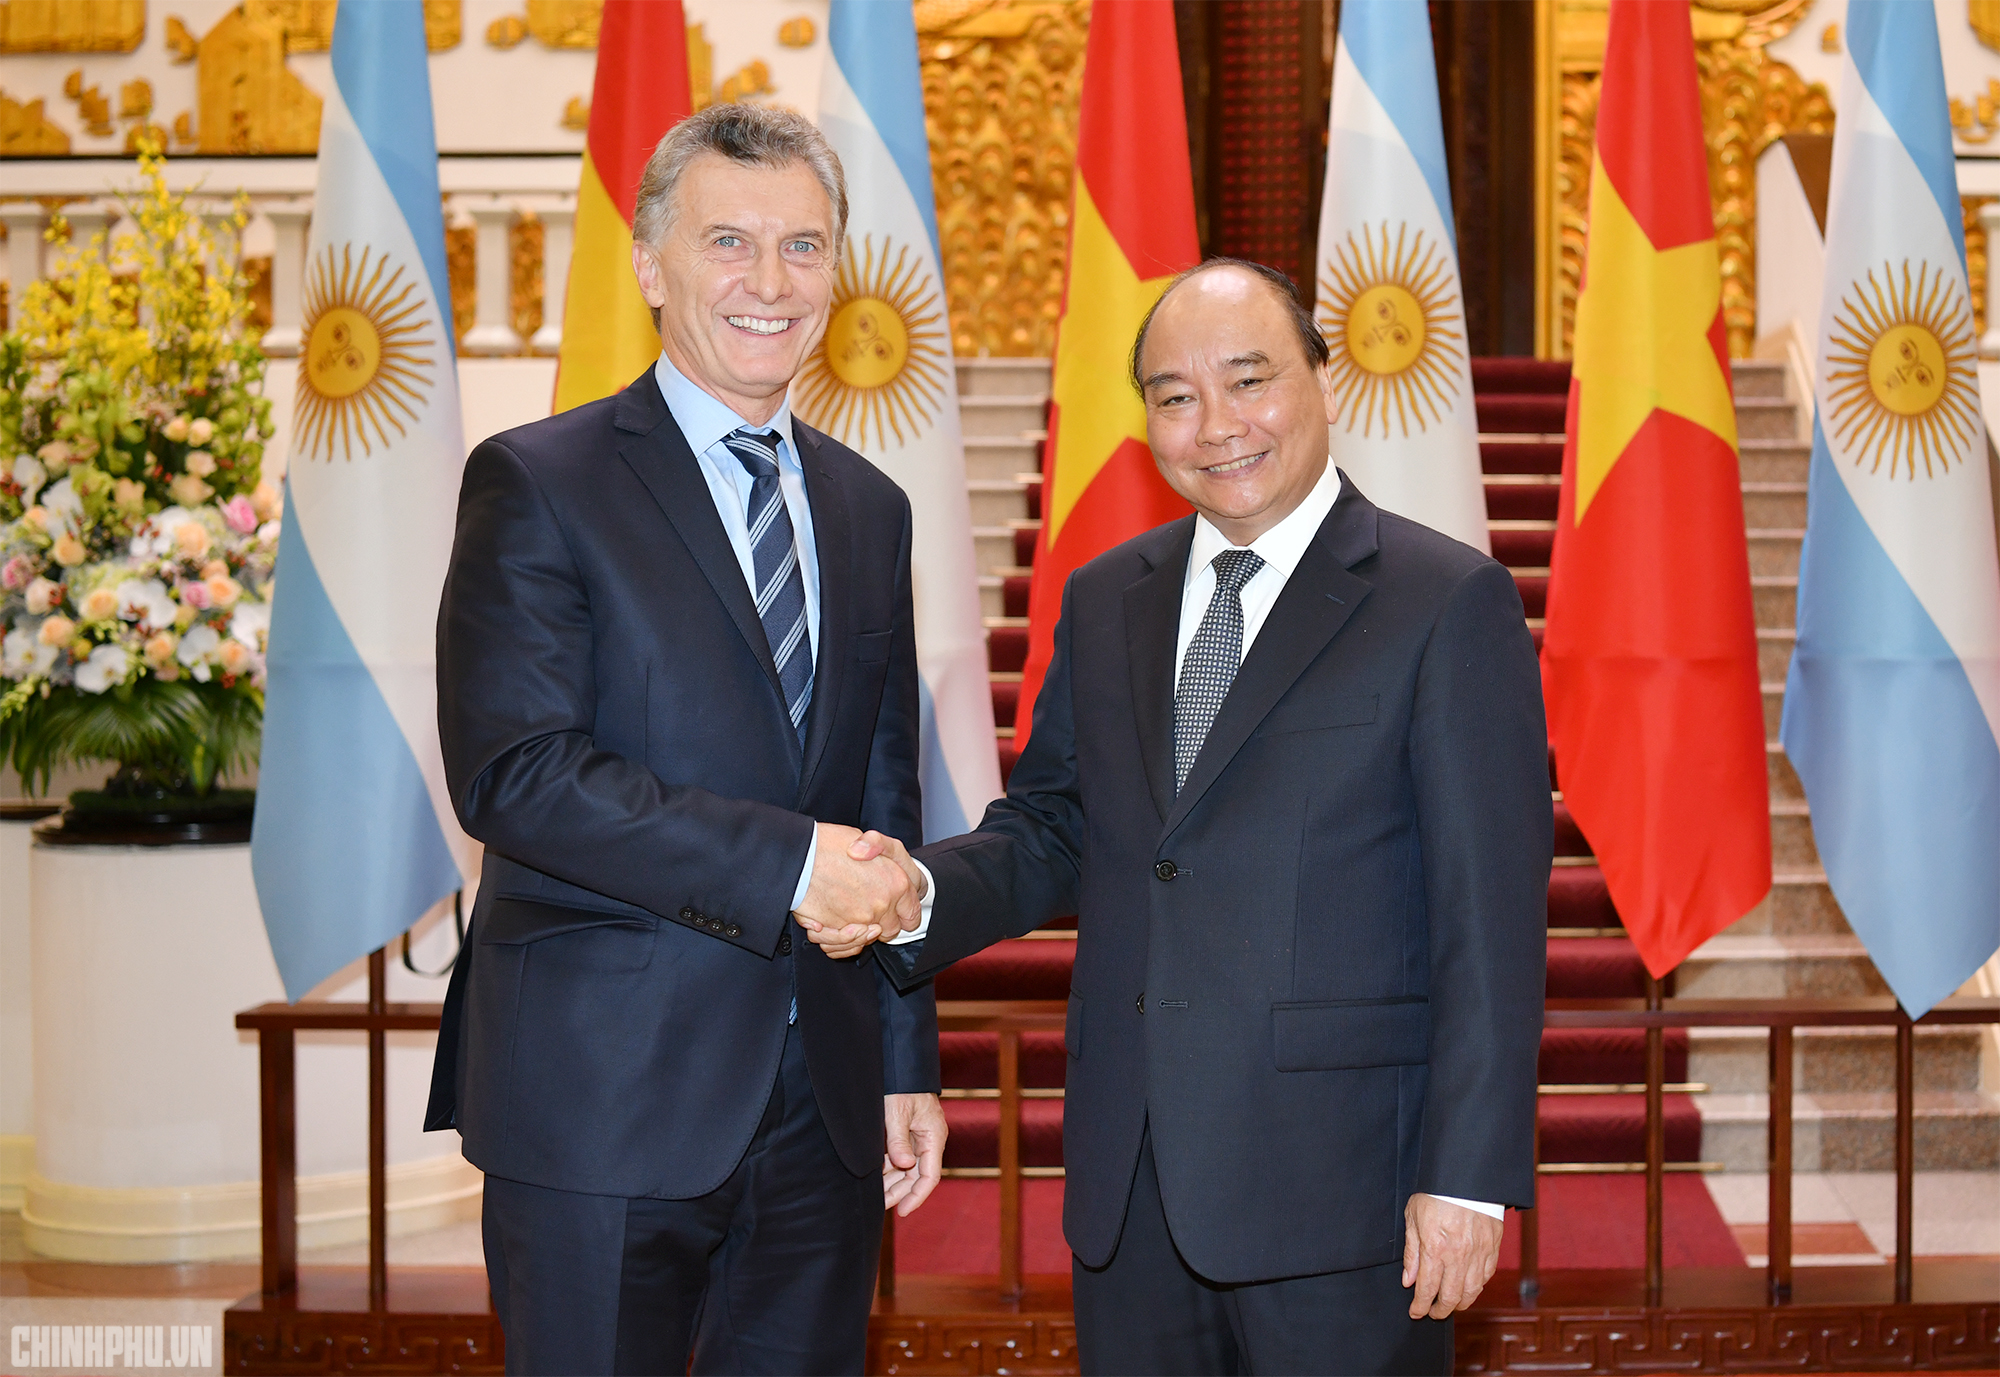 Đối tác Việt Nam-Argentina đã không ngừng phát triển trong nhiều năm qua. Với các thỏa thuận thương mại tự do và đẩy mạnh thương mại giữa hai quốc gia, Việt Nam-Argentina đã cùng nhau xây dựng được nền kinh tế vững chắc và ổn định.